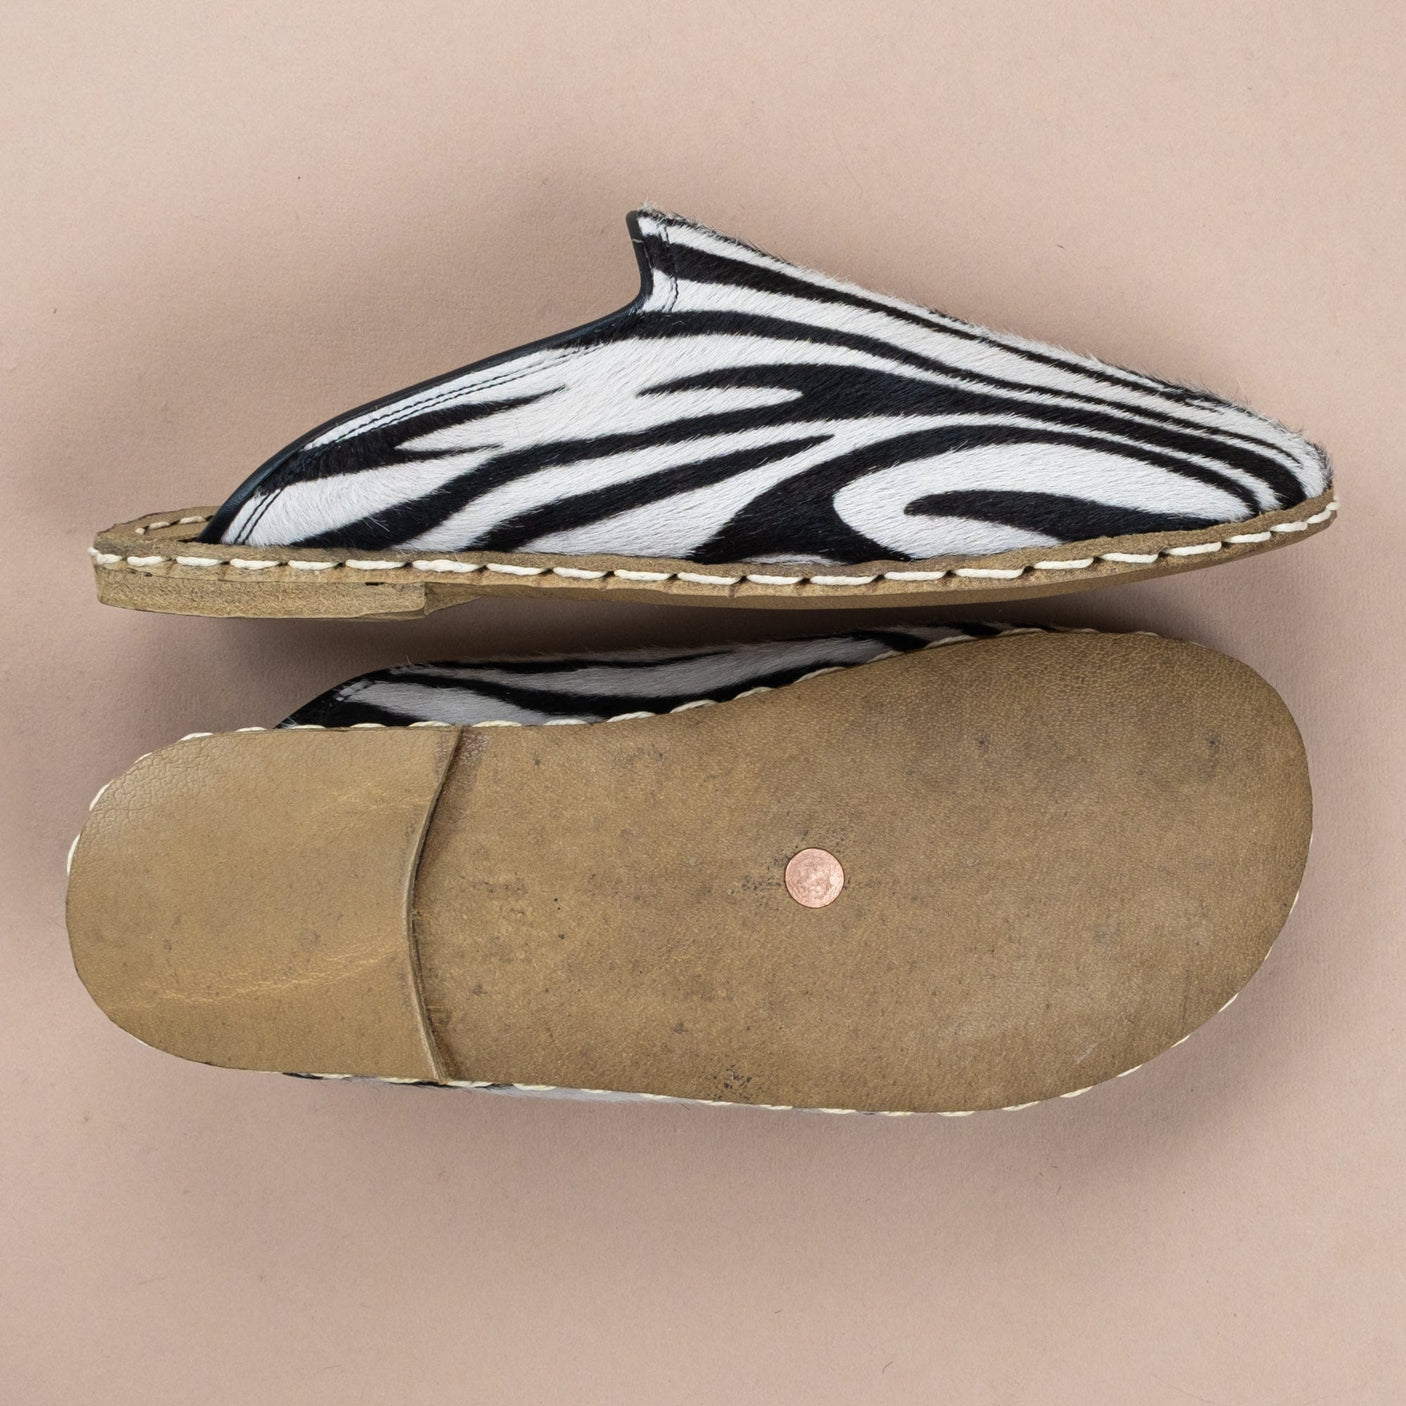 Men's Zebra Barefoot Slippers